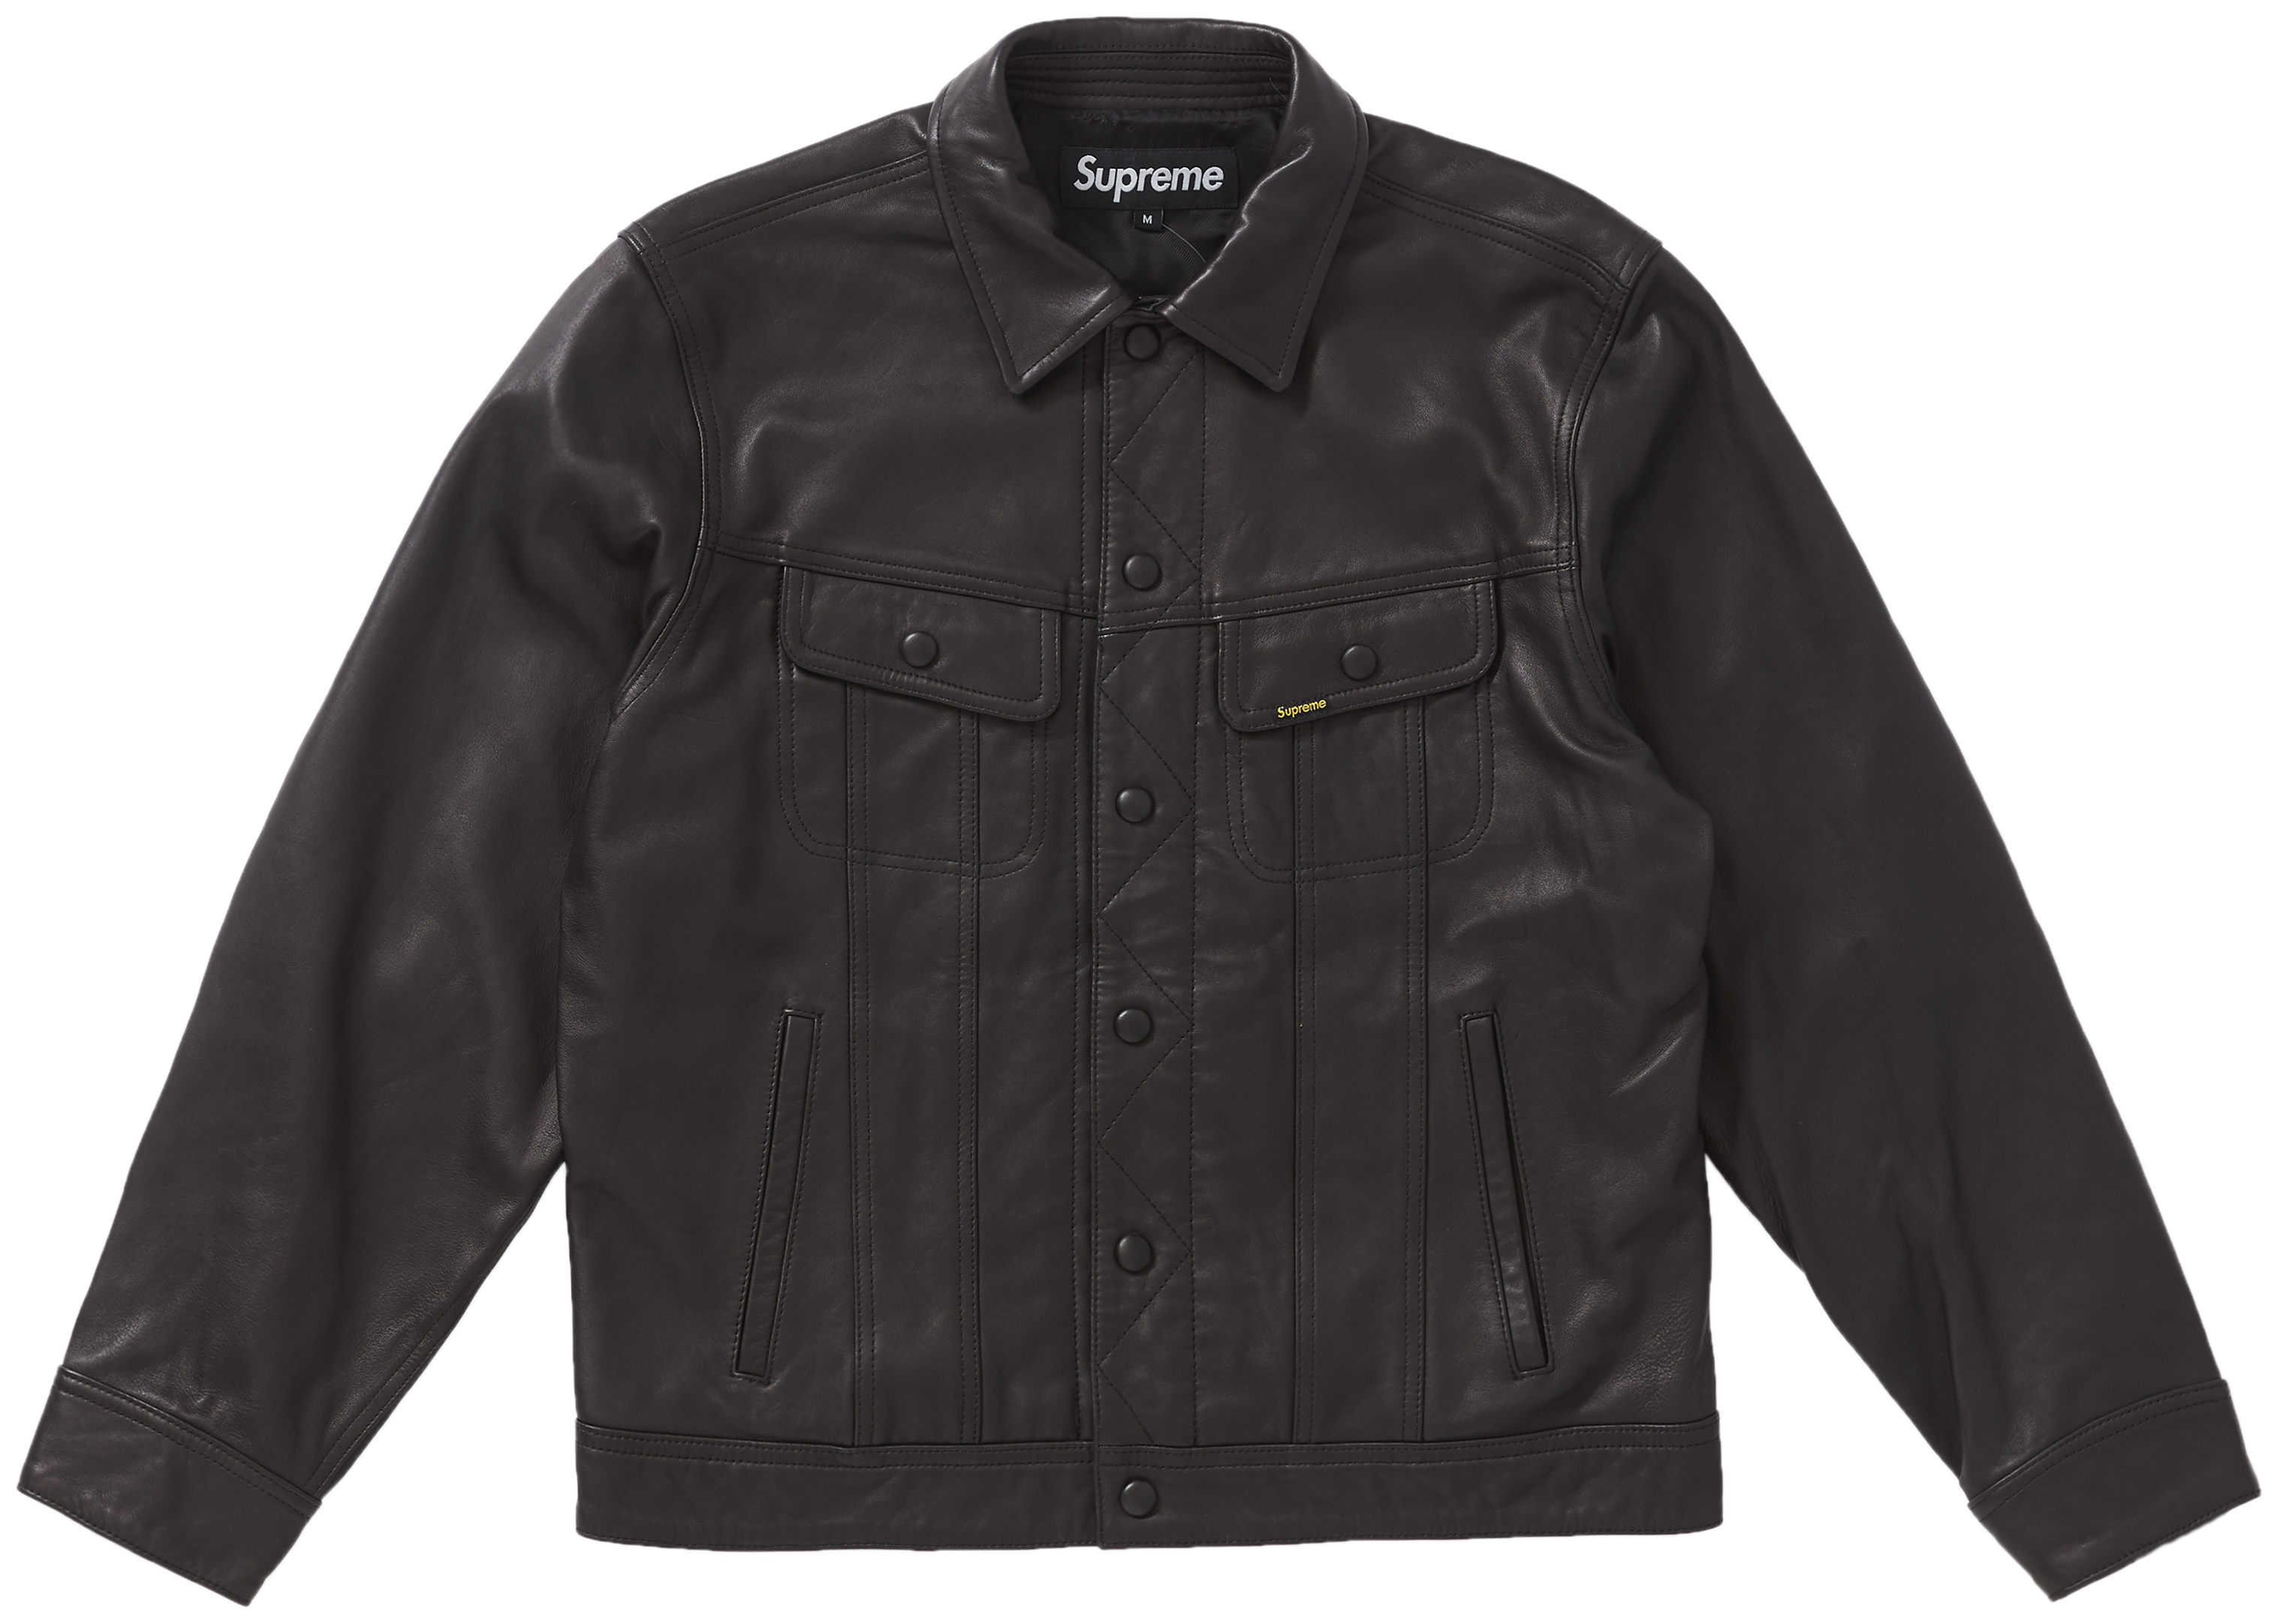 ブルー系,S【逸品】Supreme Leather Trucker Jacket (S) レザー 